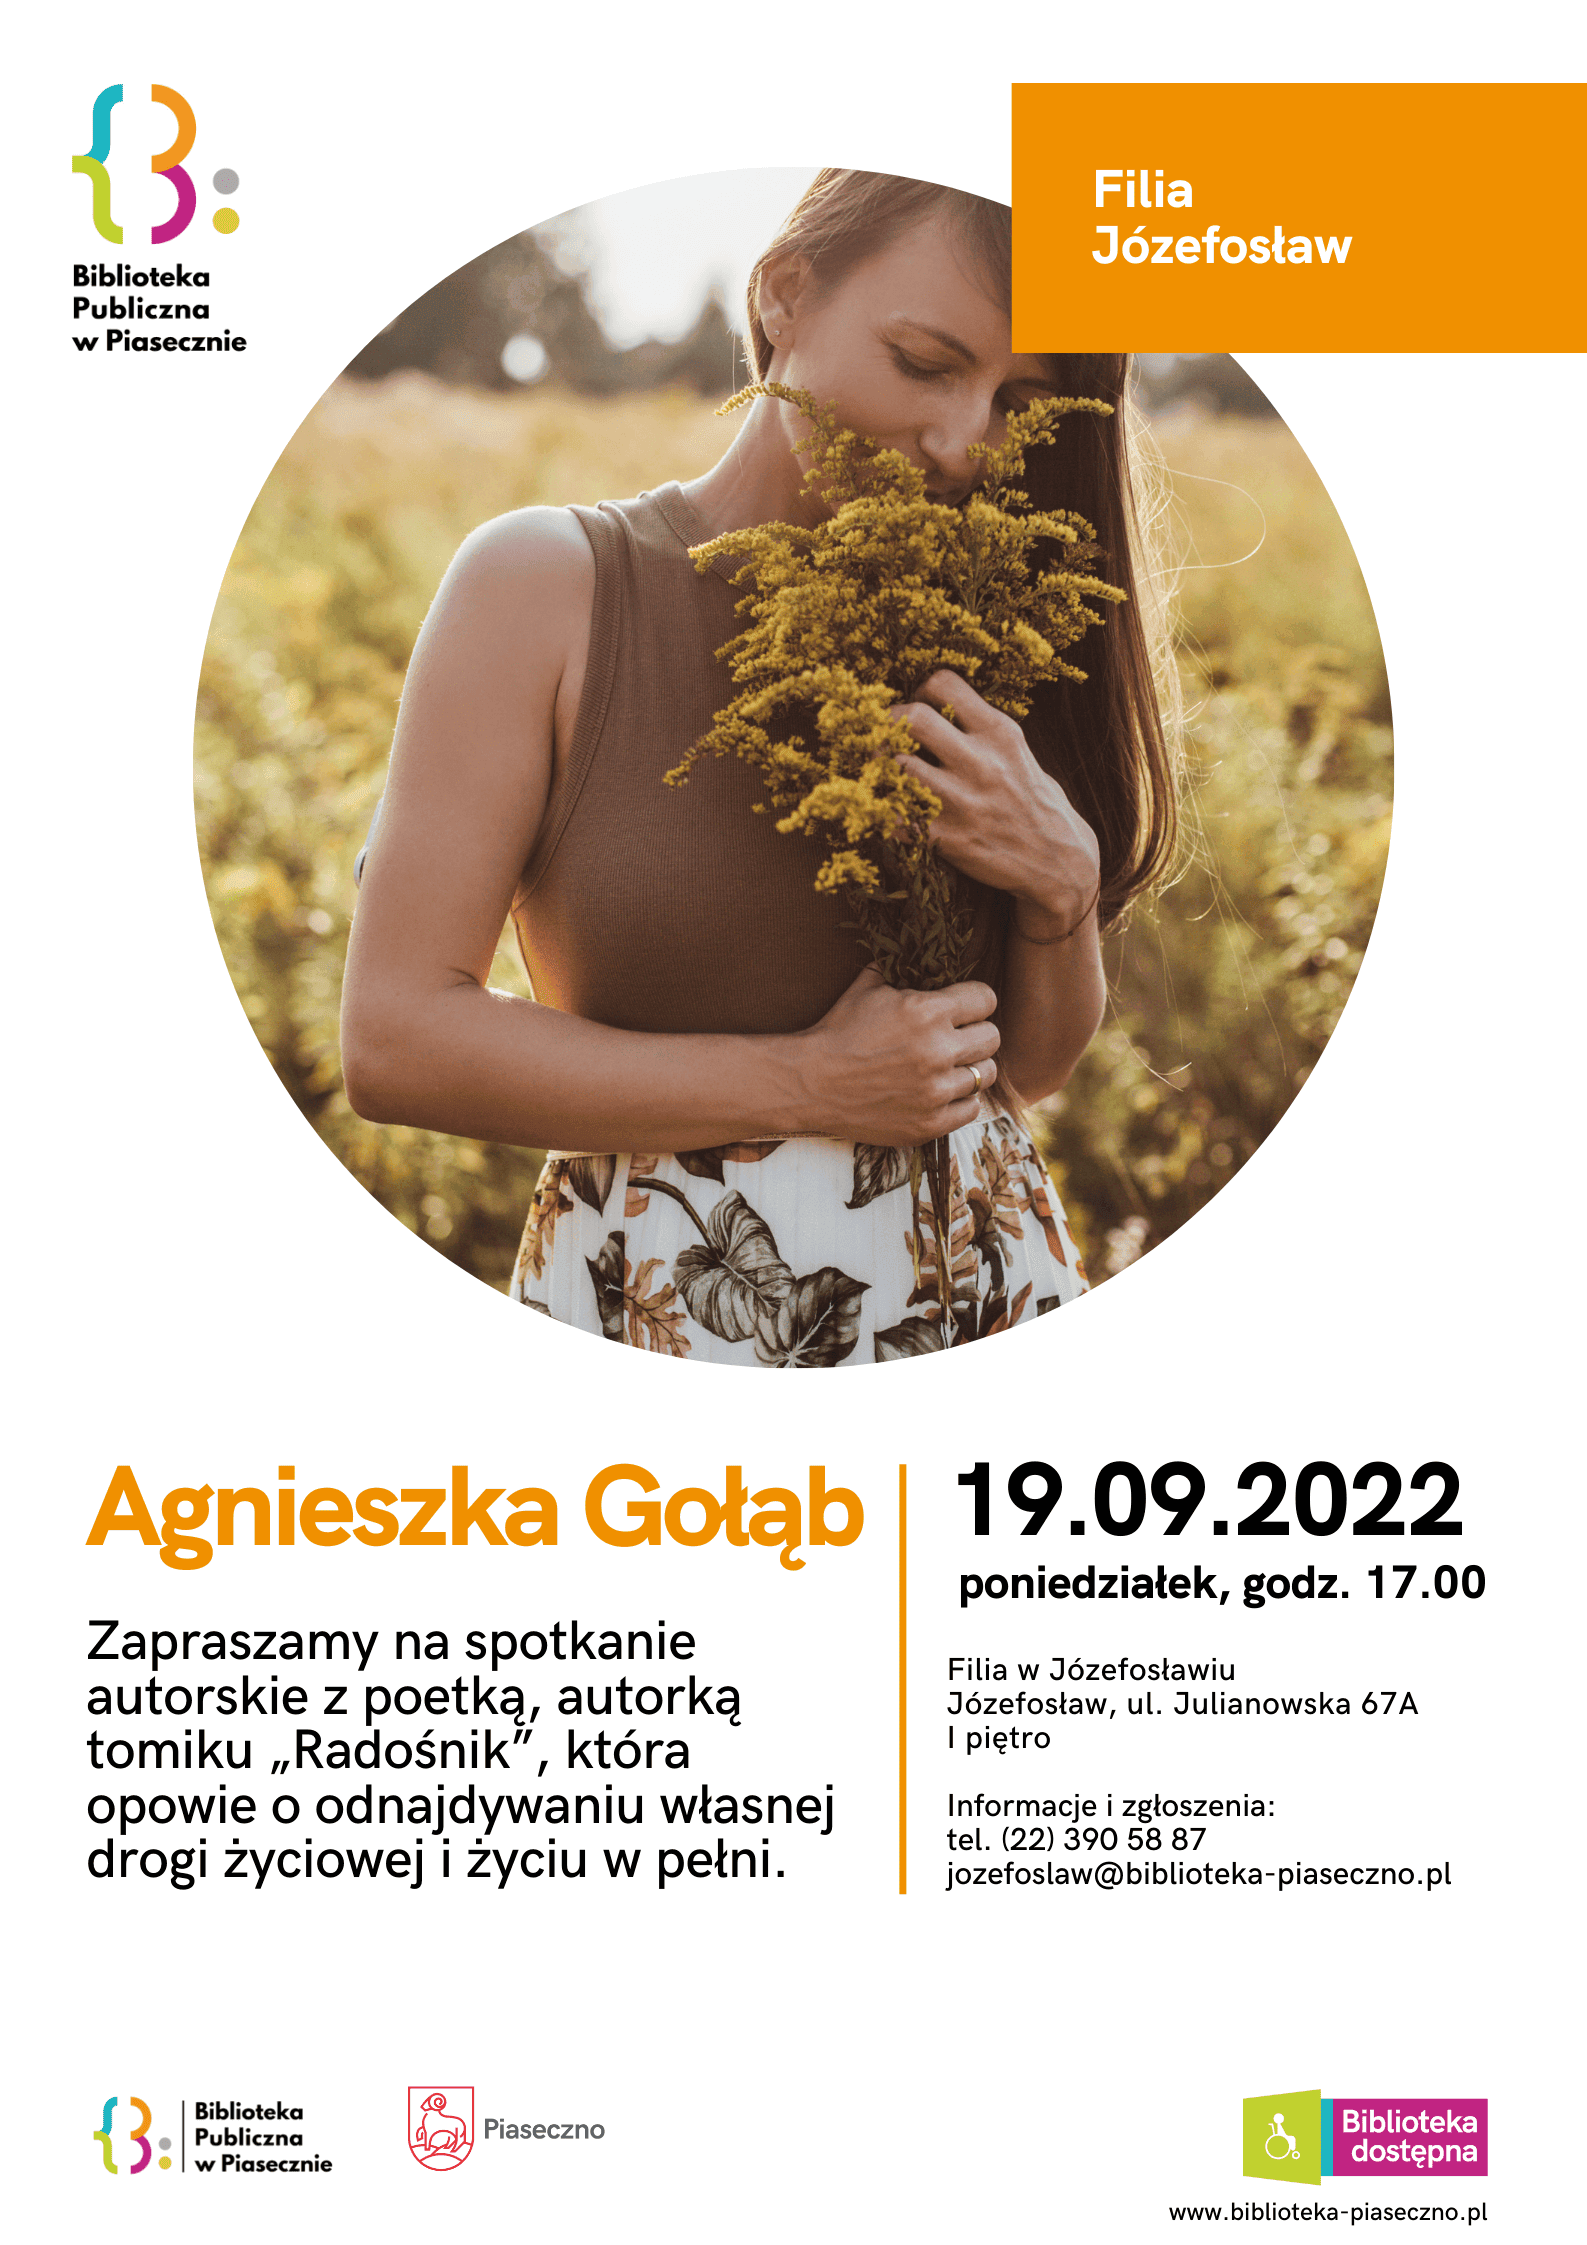 Spotkanie z Agnieszką Gołąb – plakat informacyjny